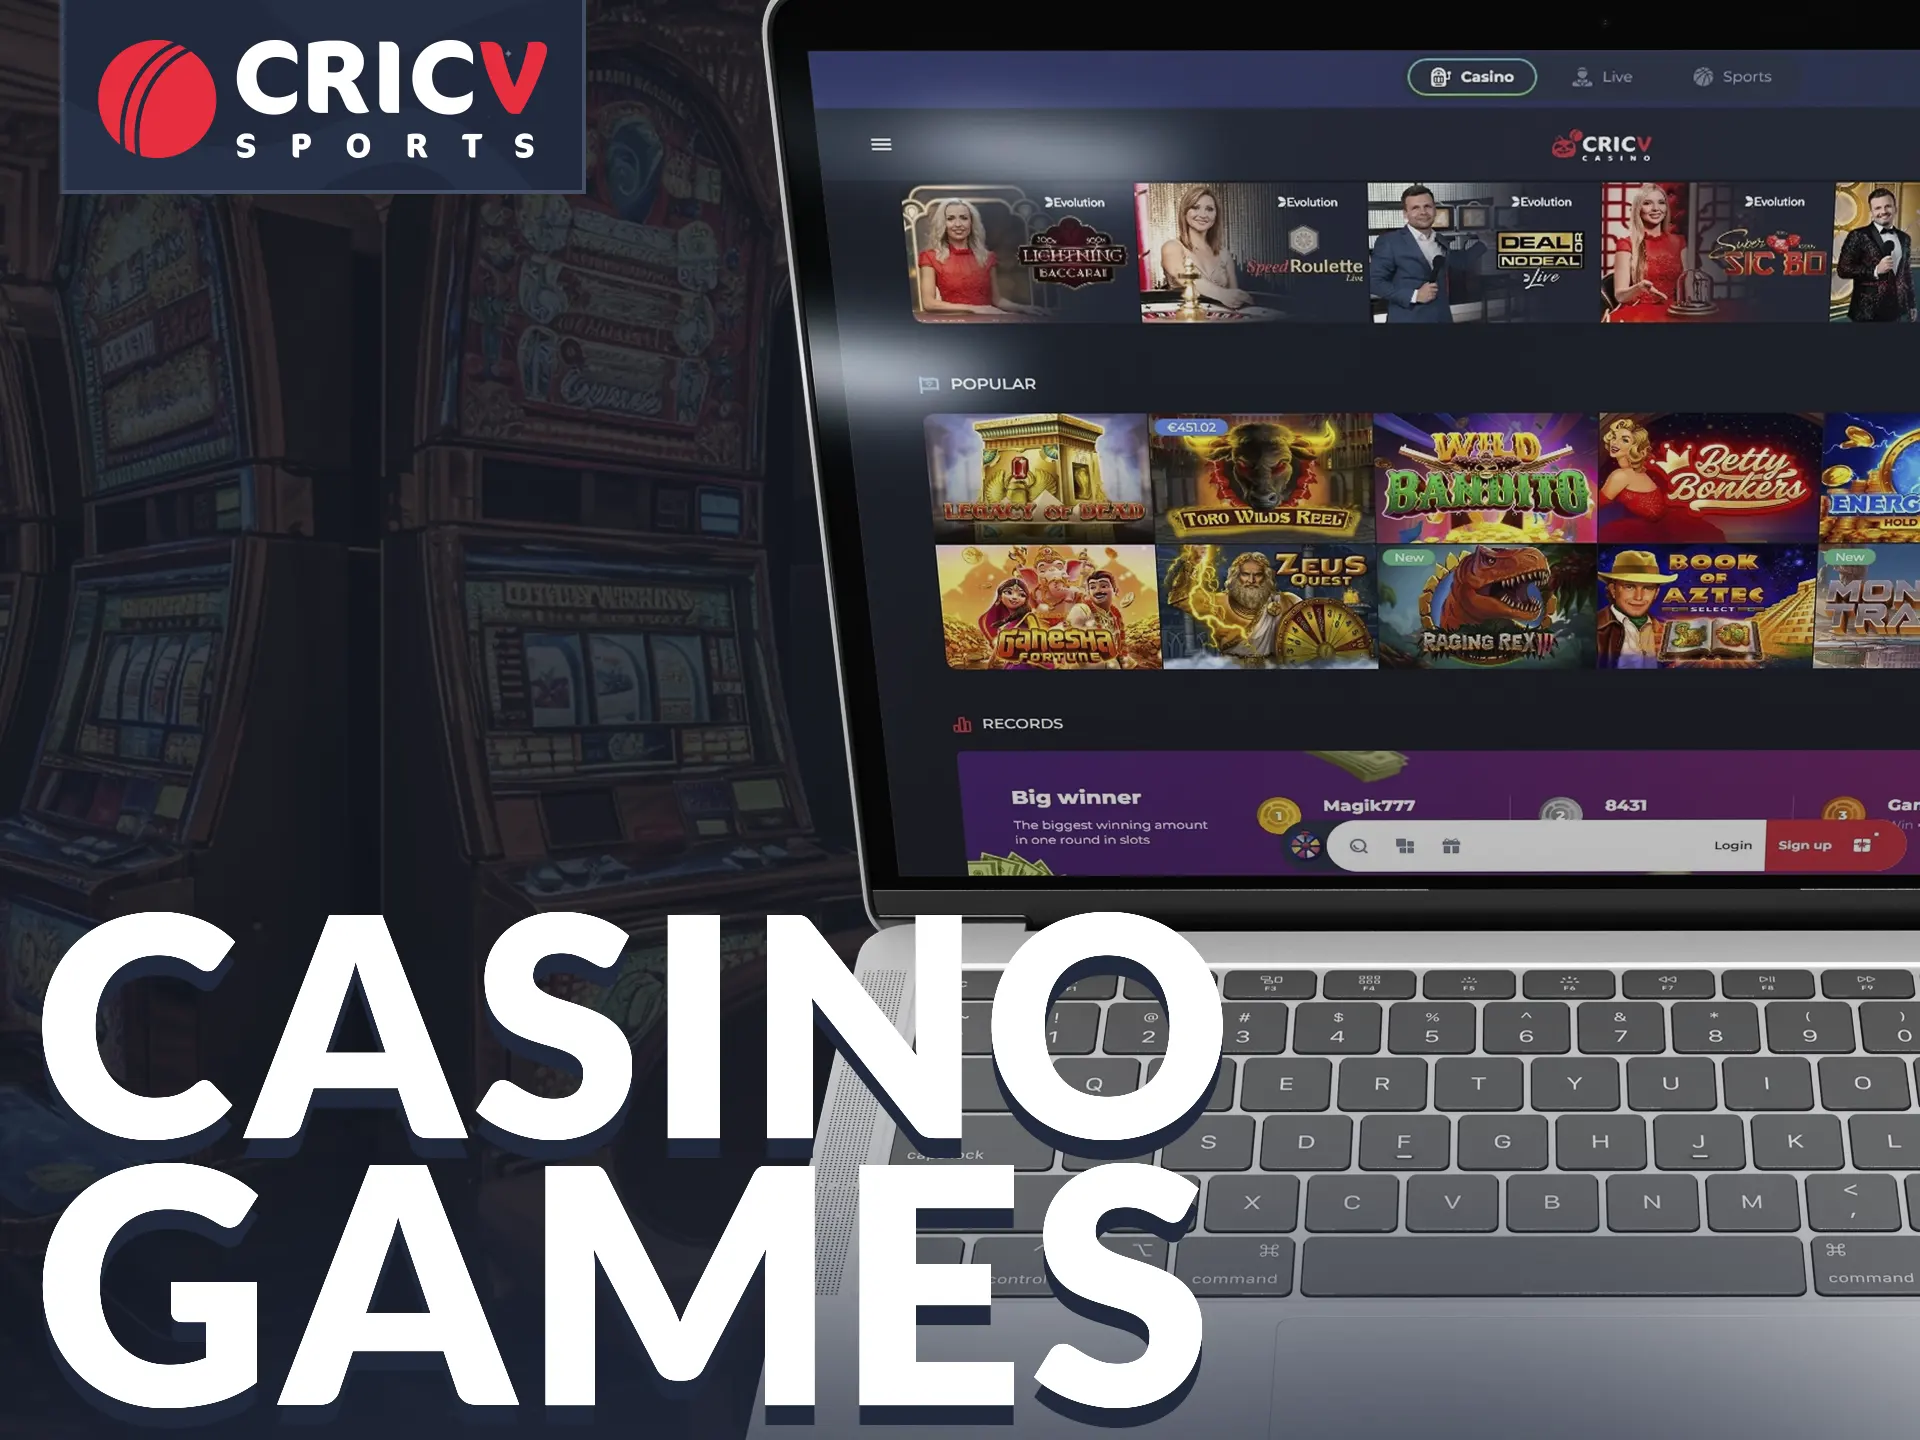 Cricv provides a wide range of casino games.